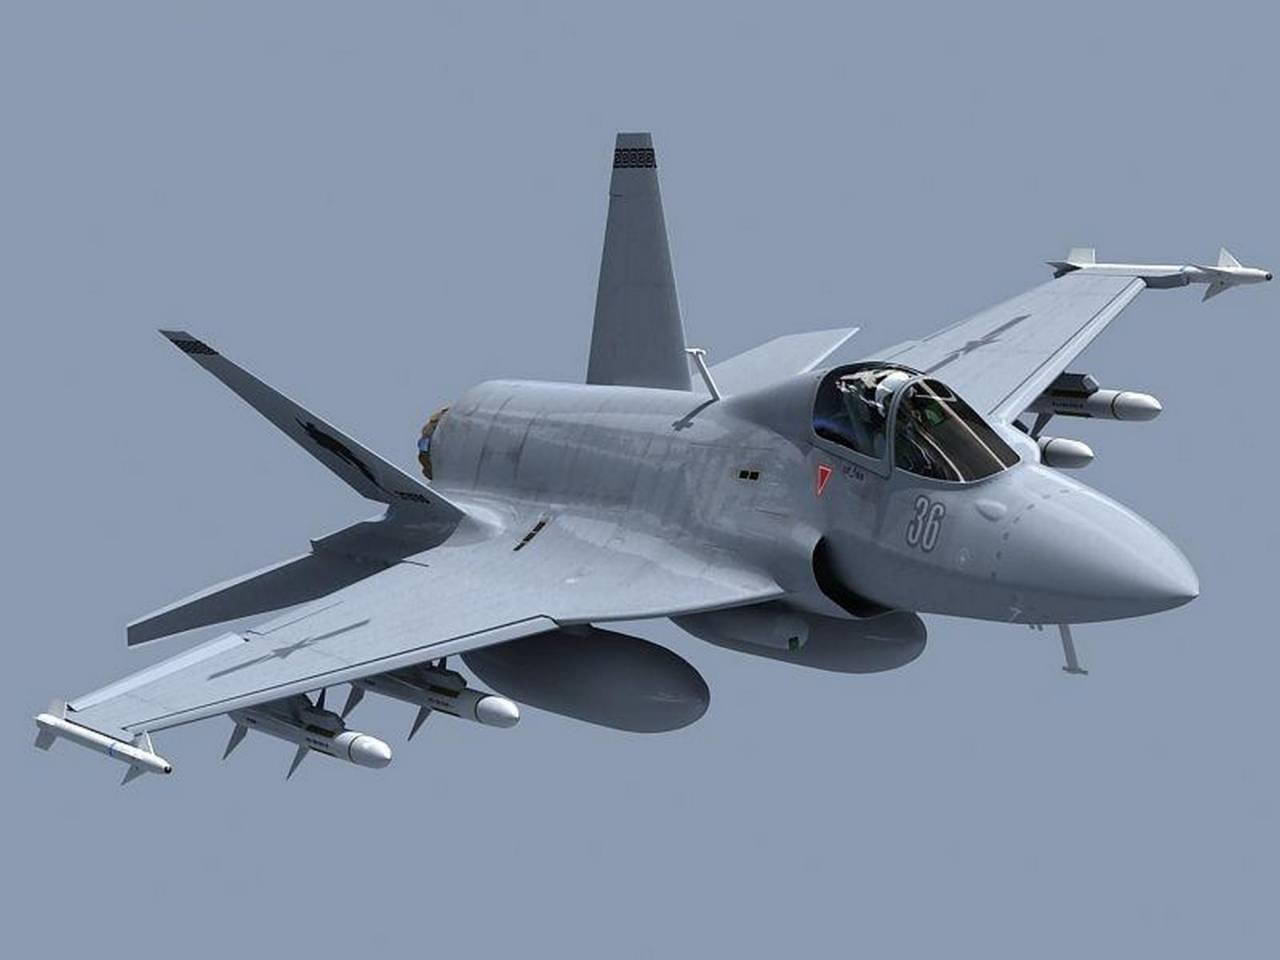  Αυτό κι αν είναι έκπληξη. Αφού οι ΗΠΑ απέρριψαν τα F35 και οι Ευρωπαίοι τα Eurofighters, οι Τούρκοι στρέφονται στα κινεζικά JF-17 Thunder.